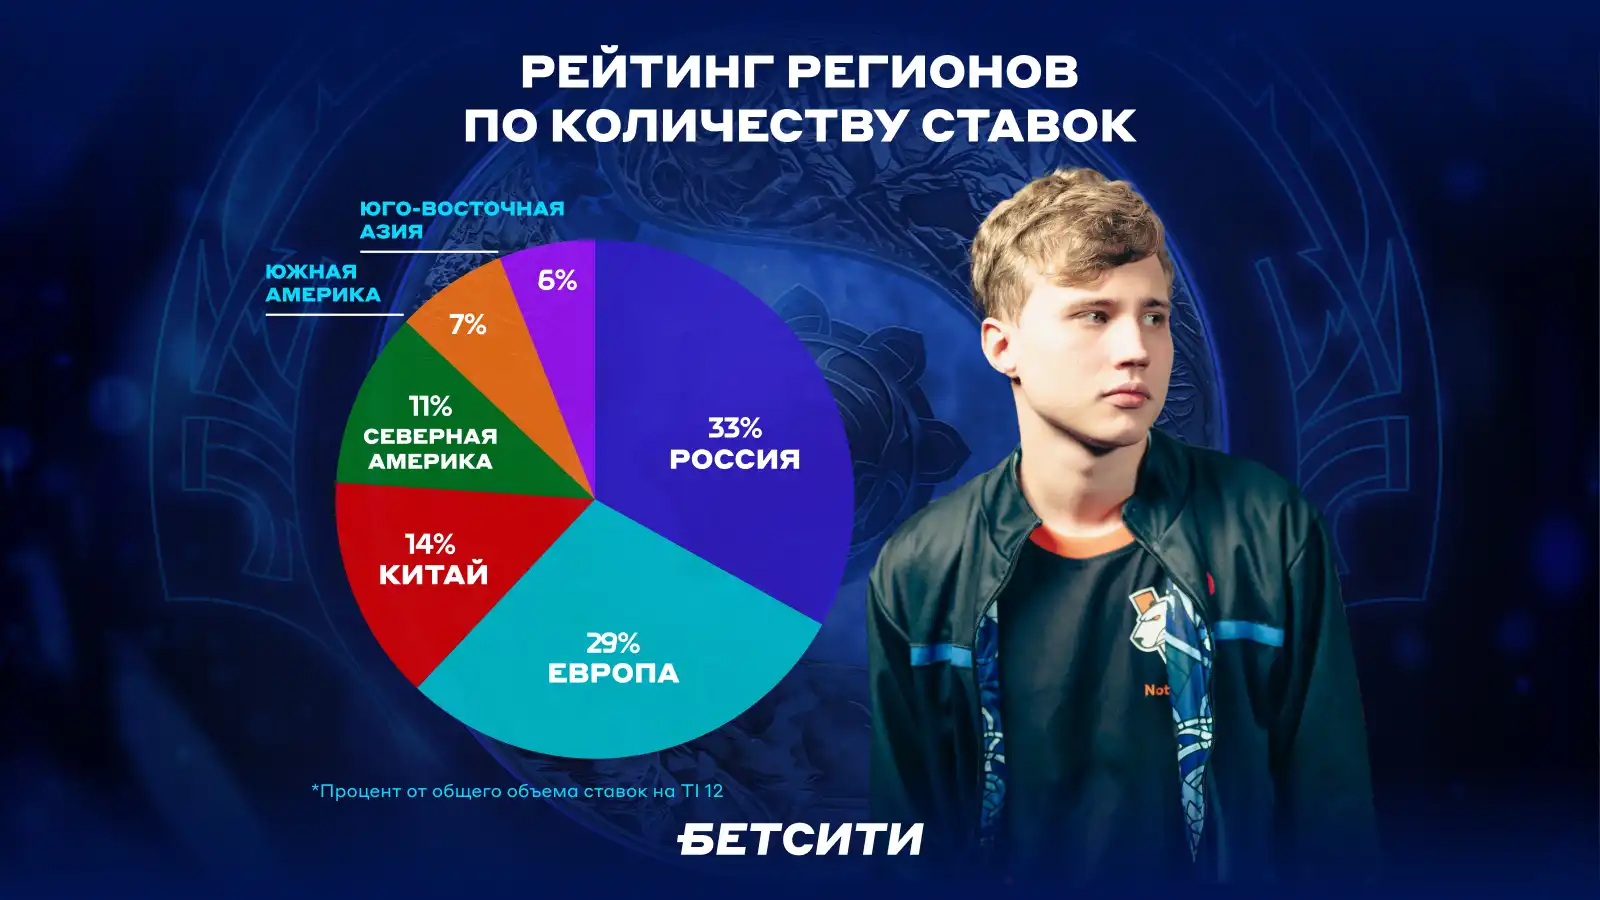 Российские команды обеспечили прибыль игрокам: БЕТСИТИ подводит итоги The International 12